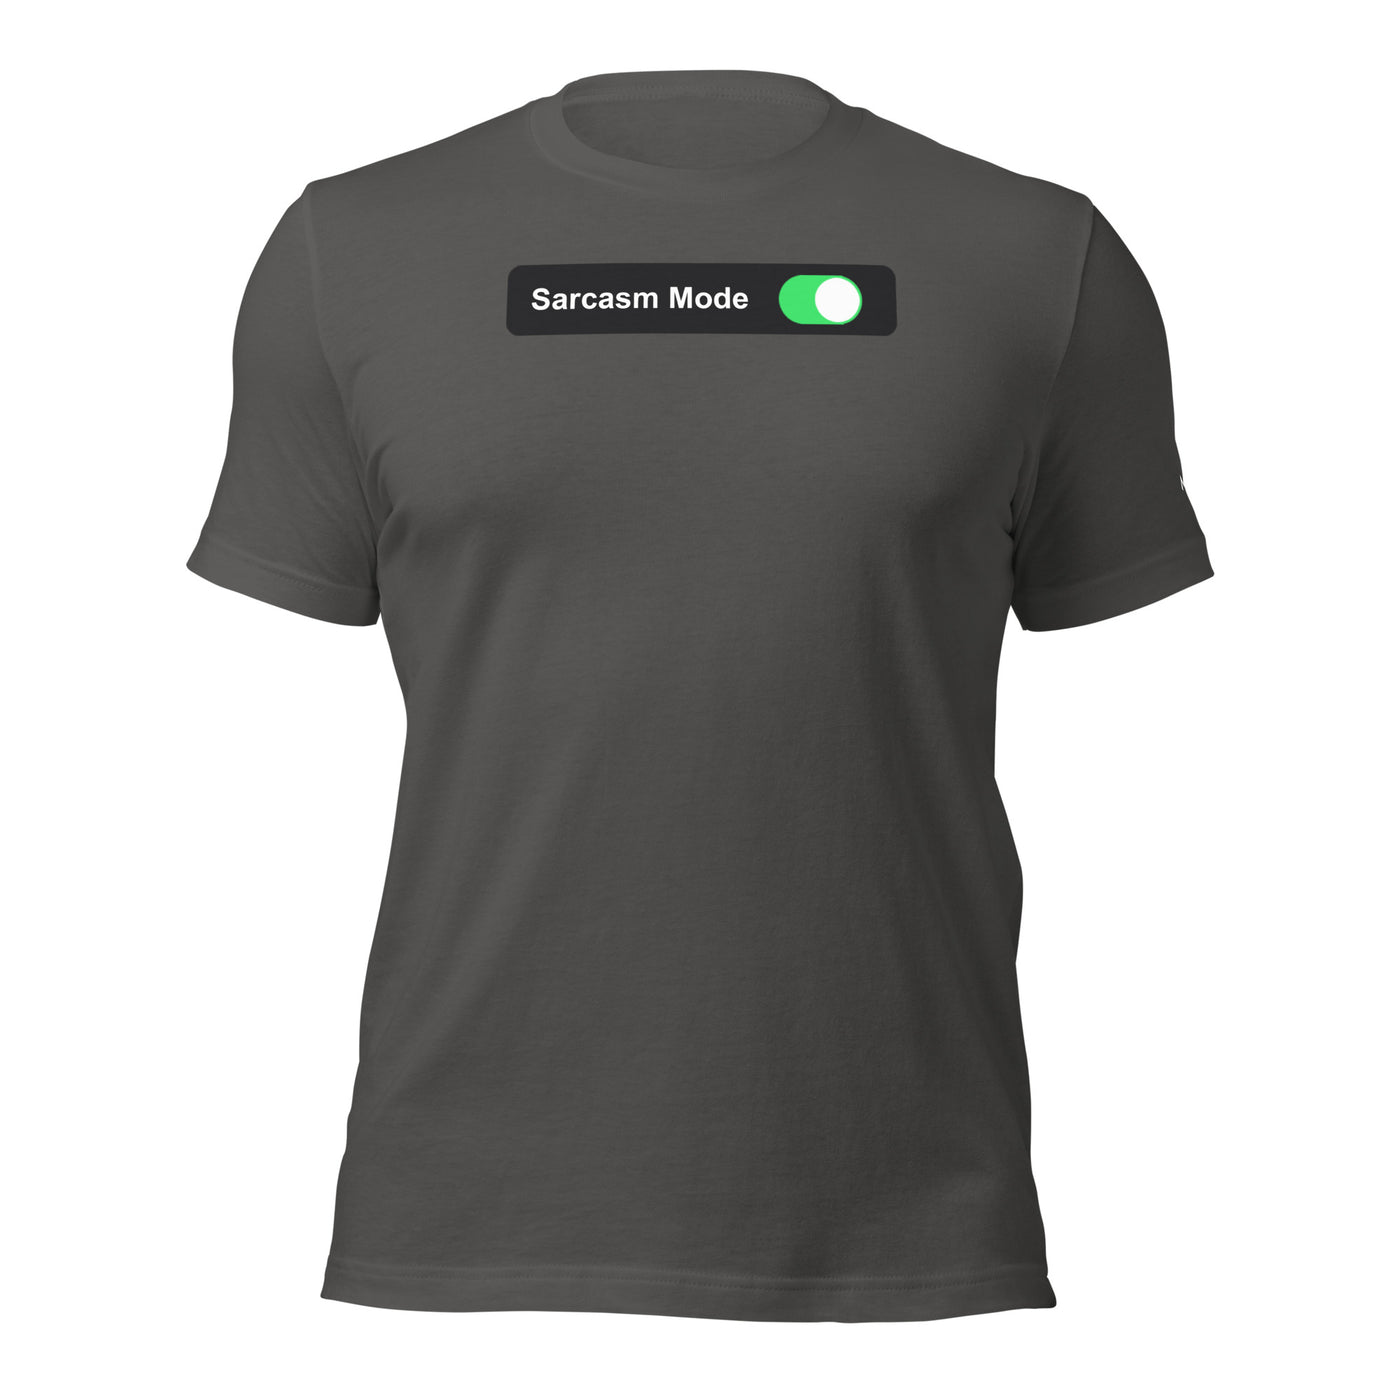 Sarcasm Mode On - Unisex t-shirt